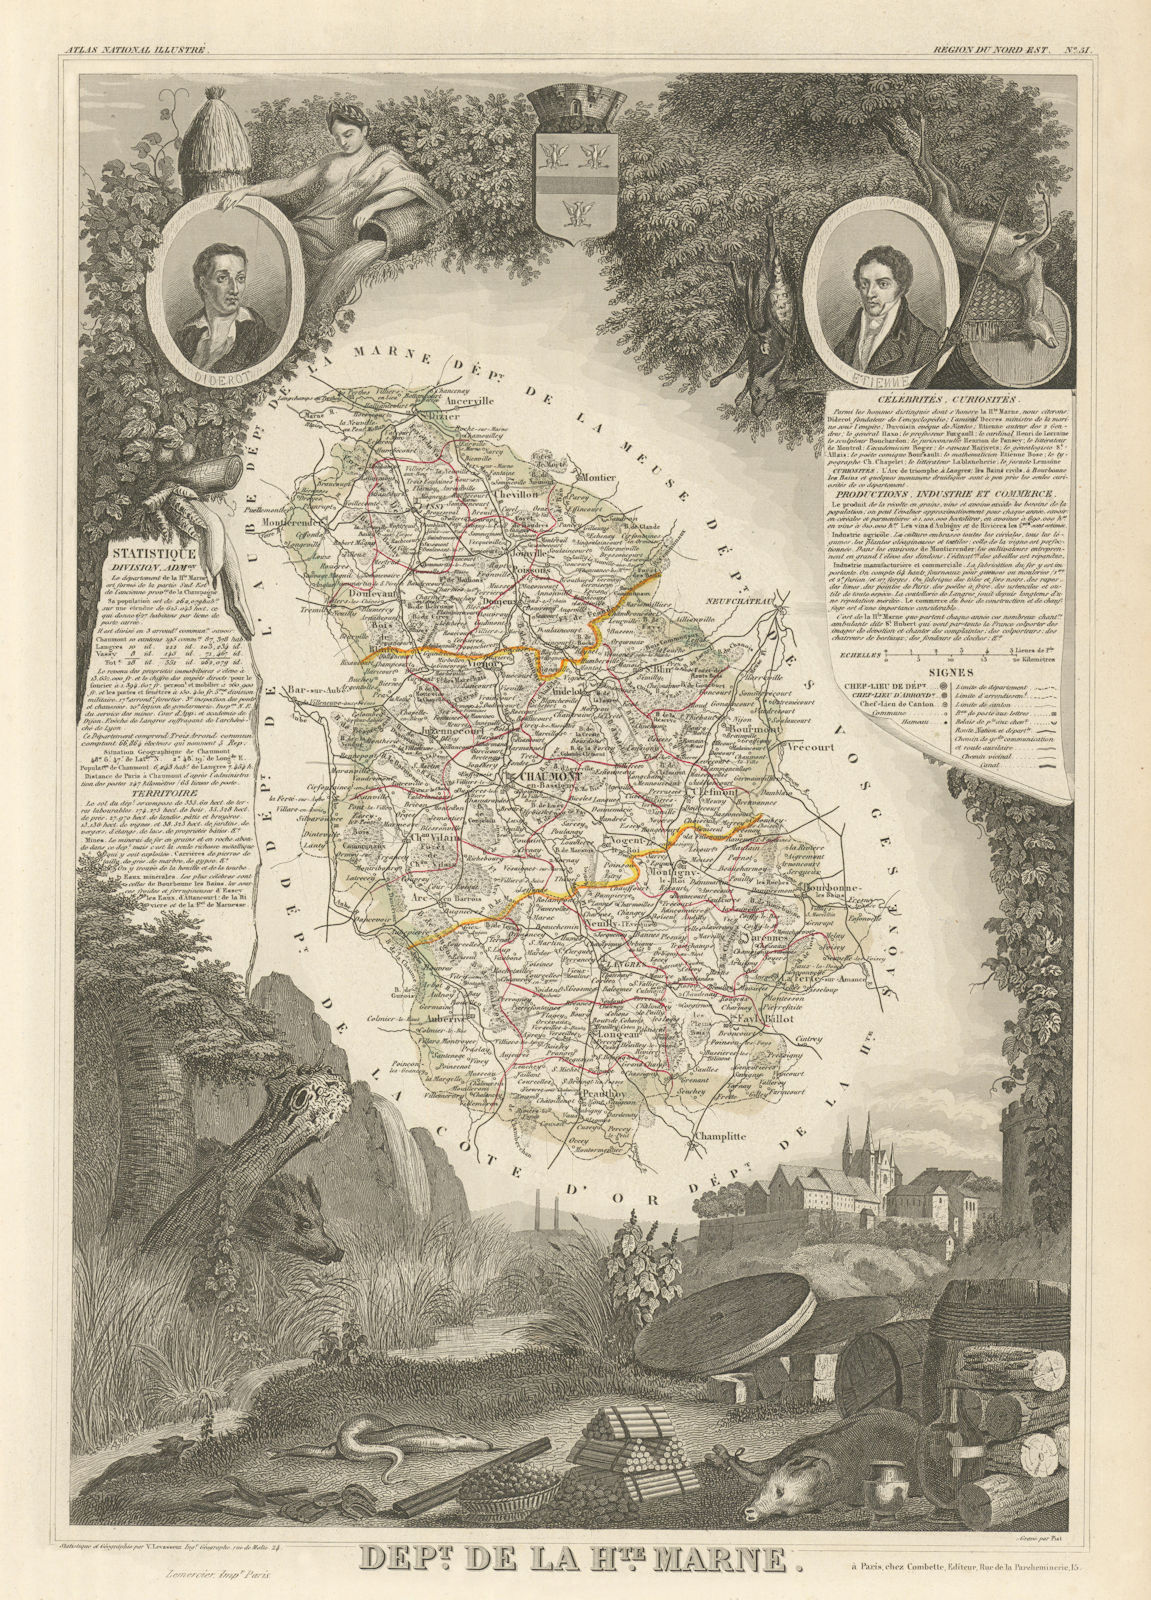 Associate Product Département de la HAUTE-MARNE. Decorative antique map/carte. LEVASSEUR 1856